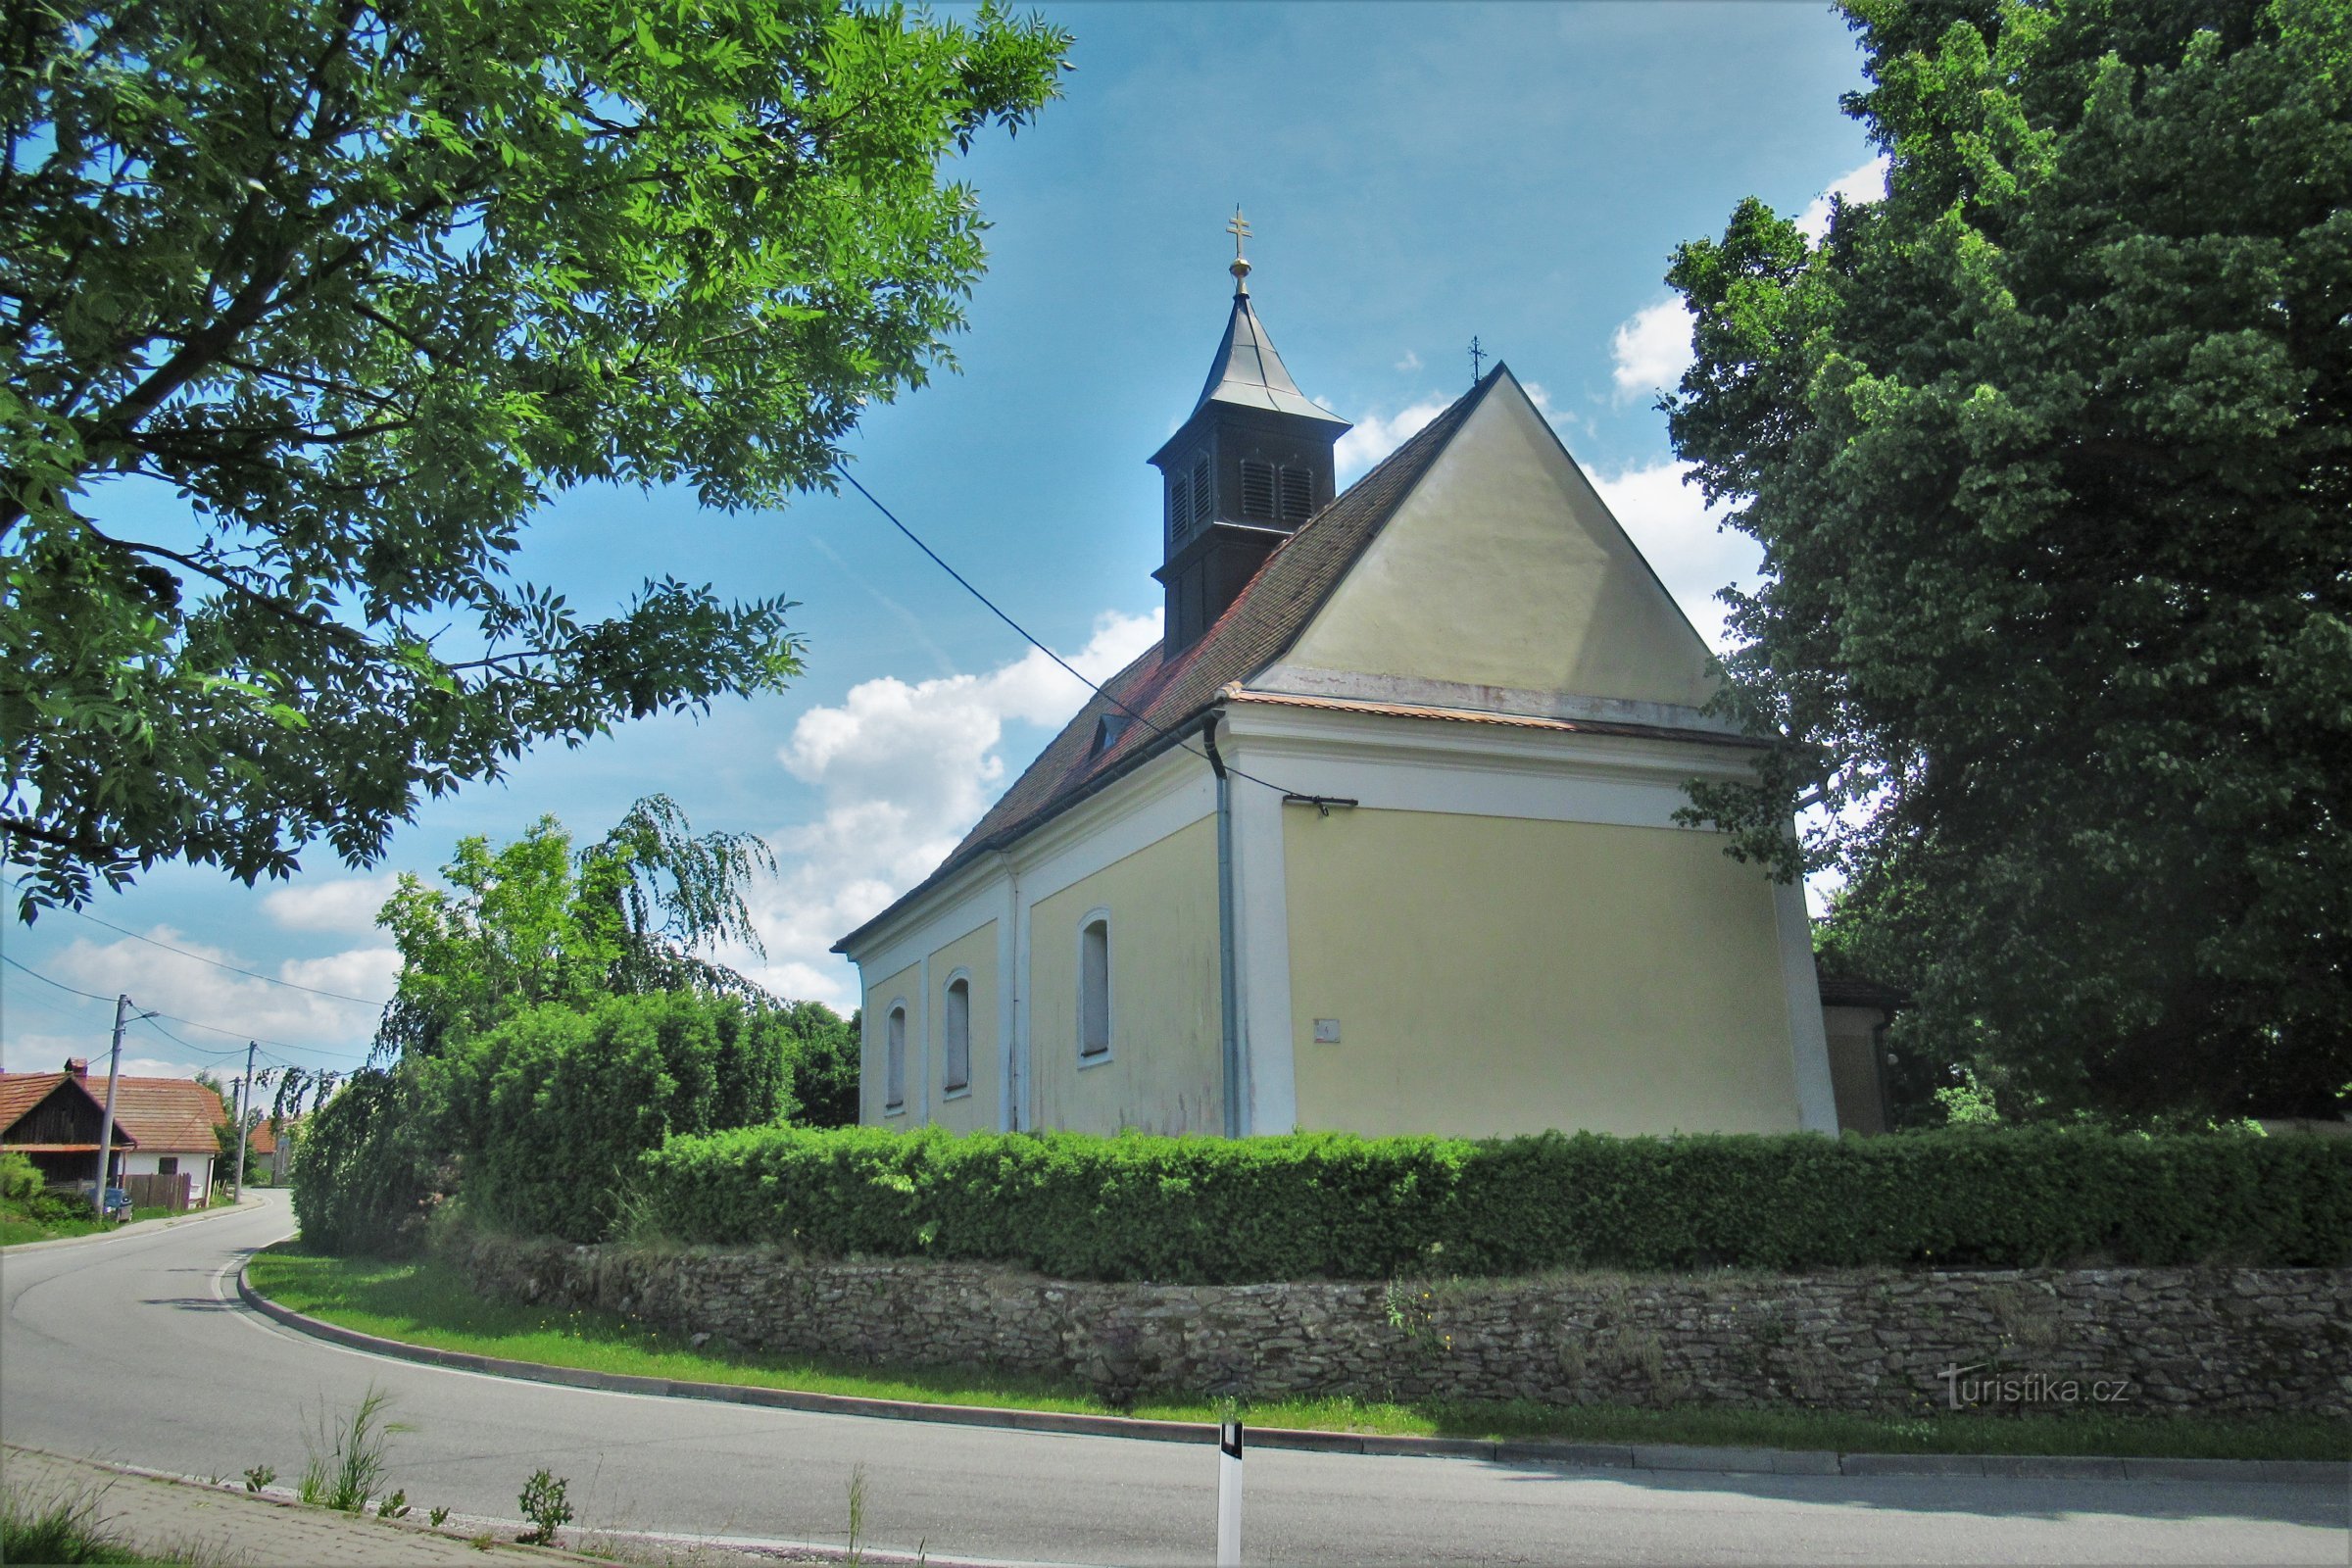 Nemčice - Église de St. Nicolas